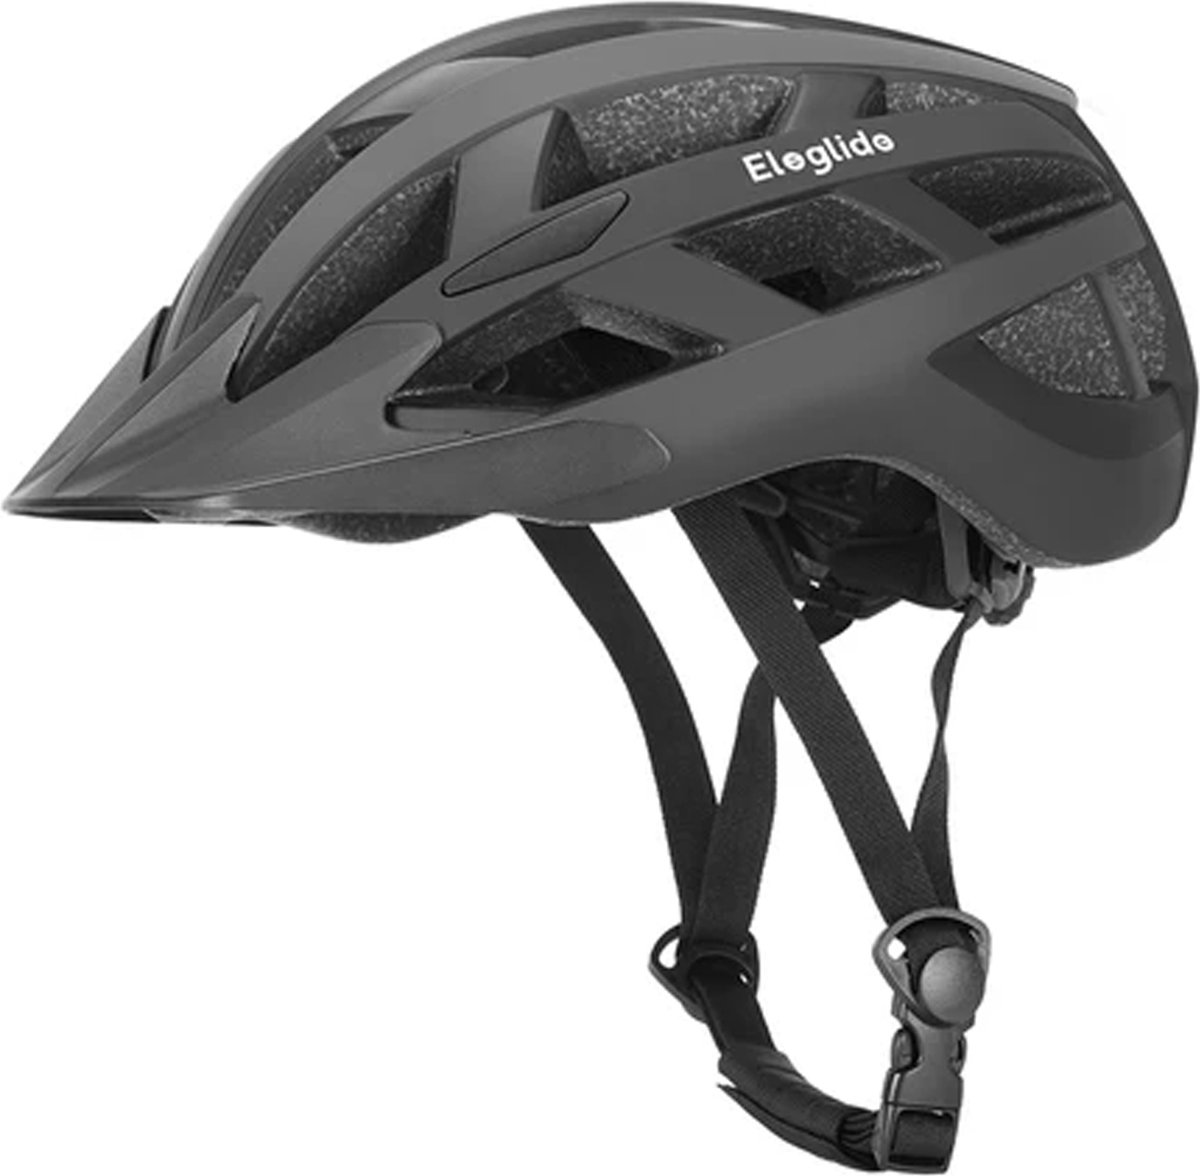 Fietshelm met LED-achterlicht - USB oplaadbaar - Maat 58-61 cm - Zwart - Bike helmet - Heren/Dames - Elektrische fiets, Racefiets & MTB (9509915571557)